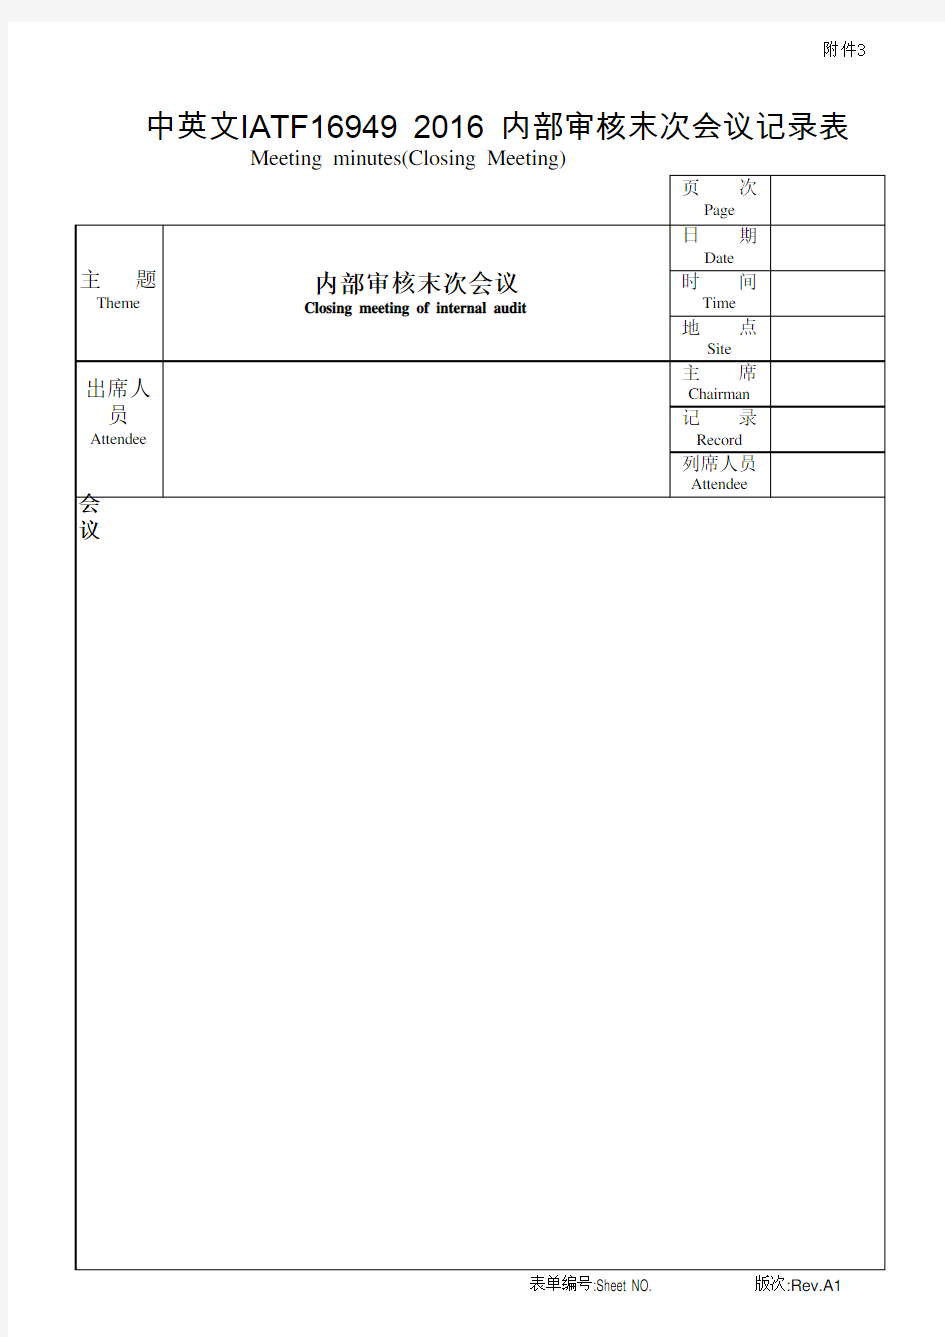 中英文IATF16949 2016 内部审核末次会议记录表